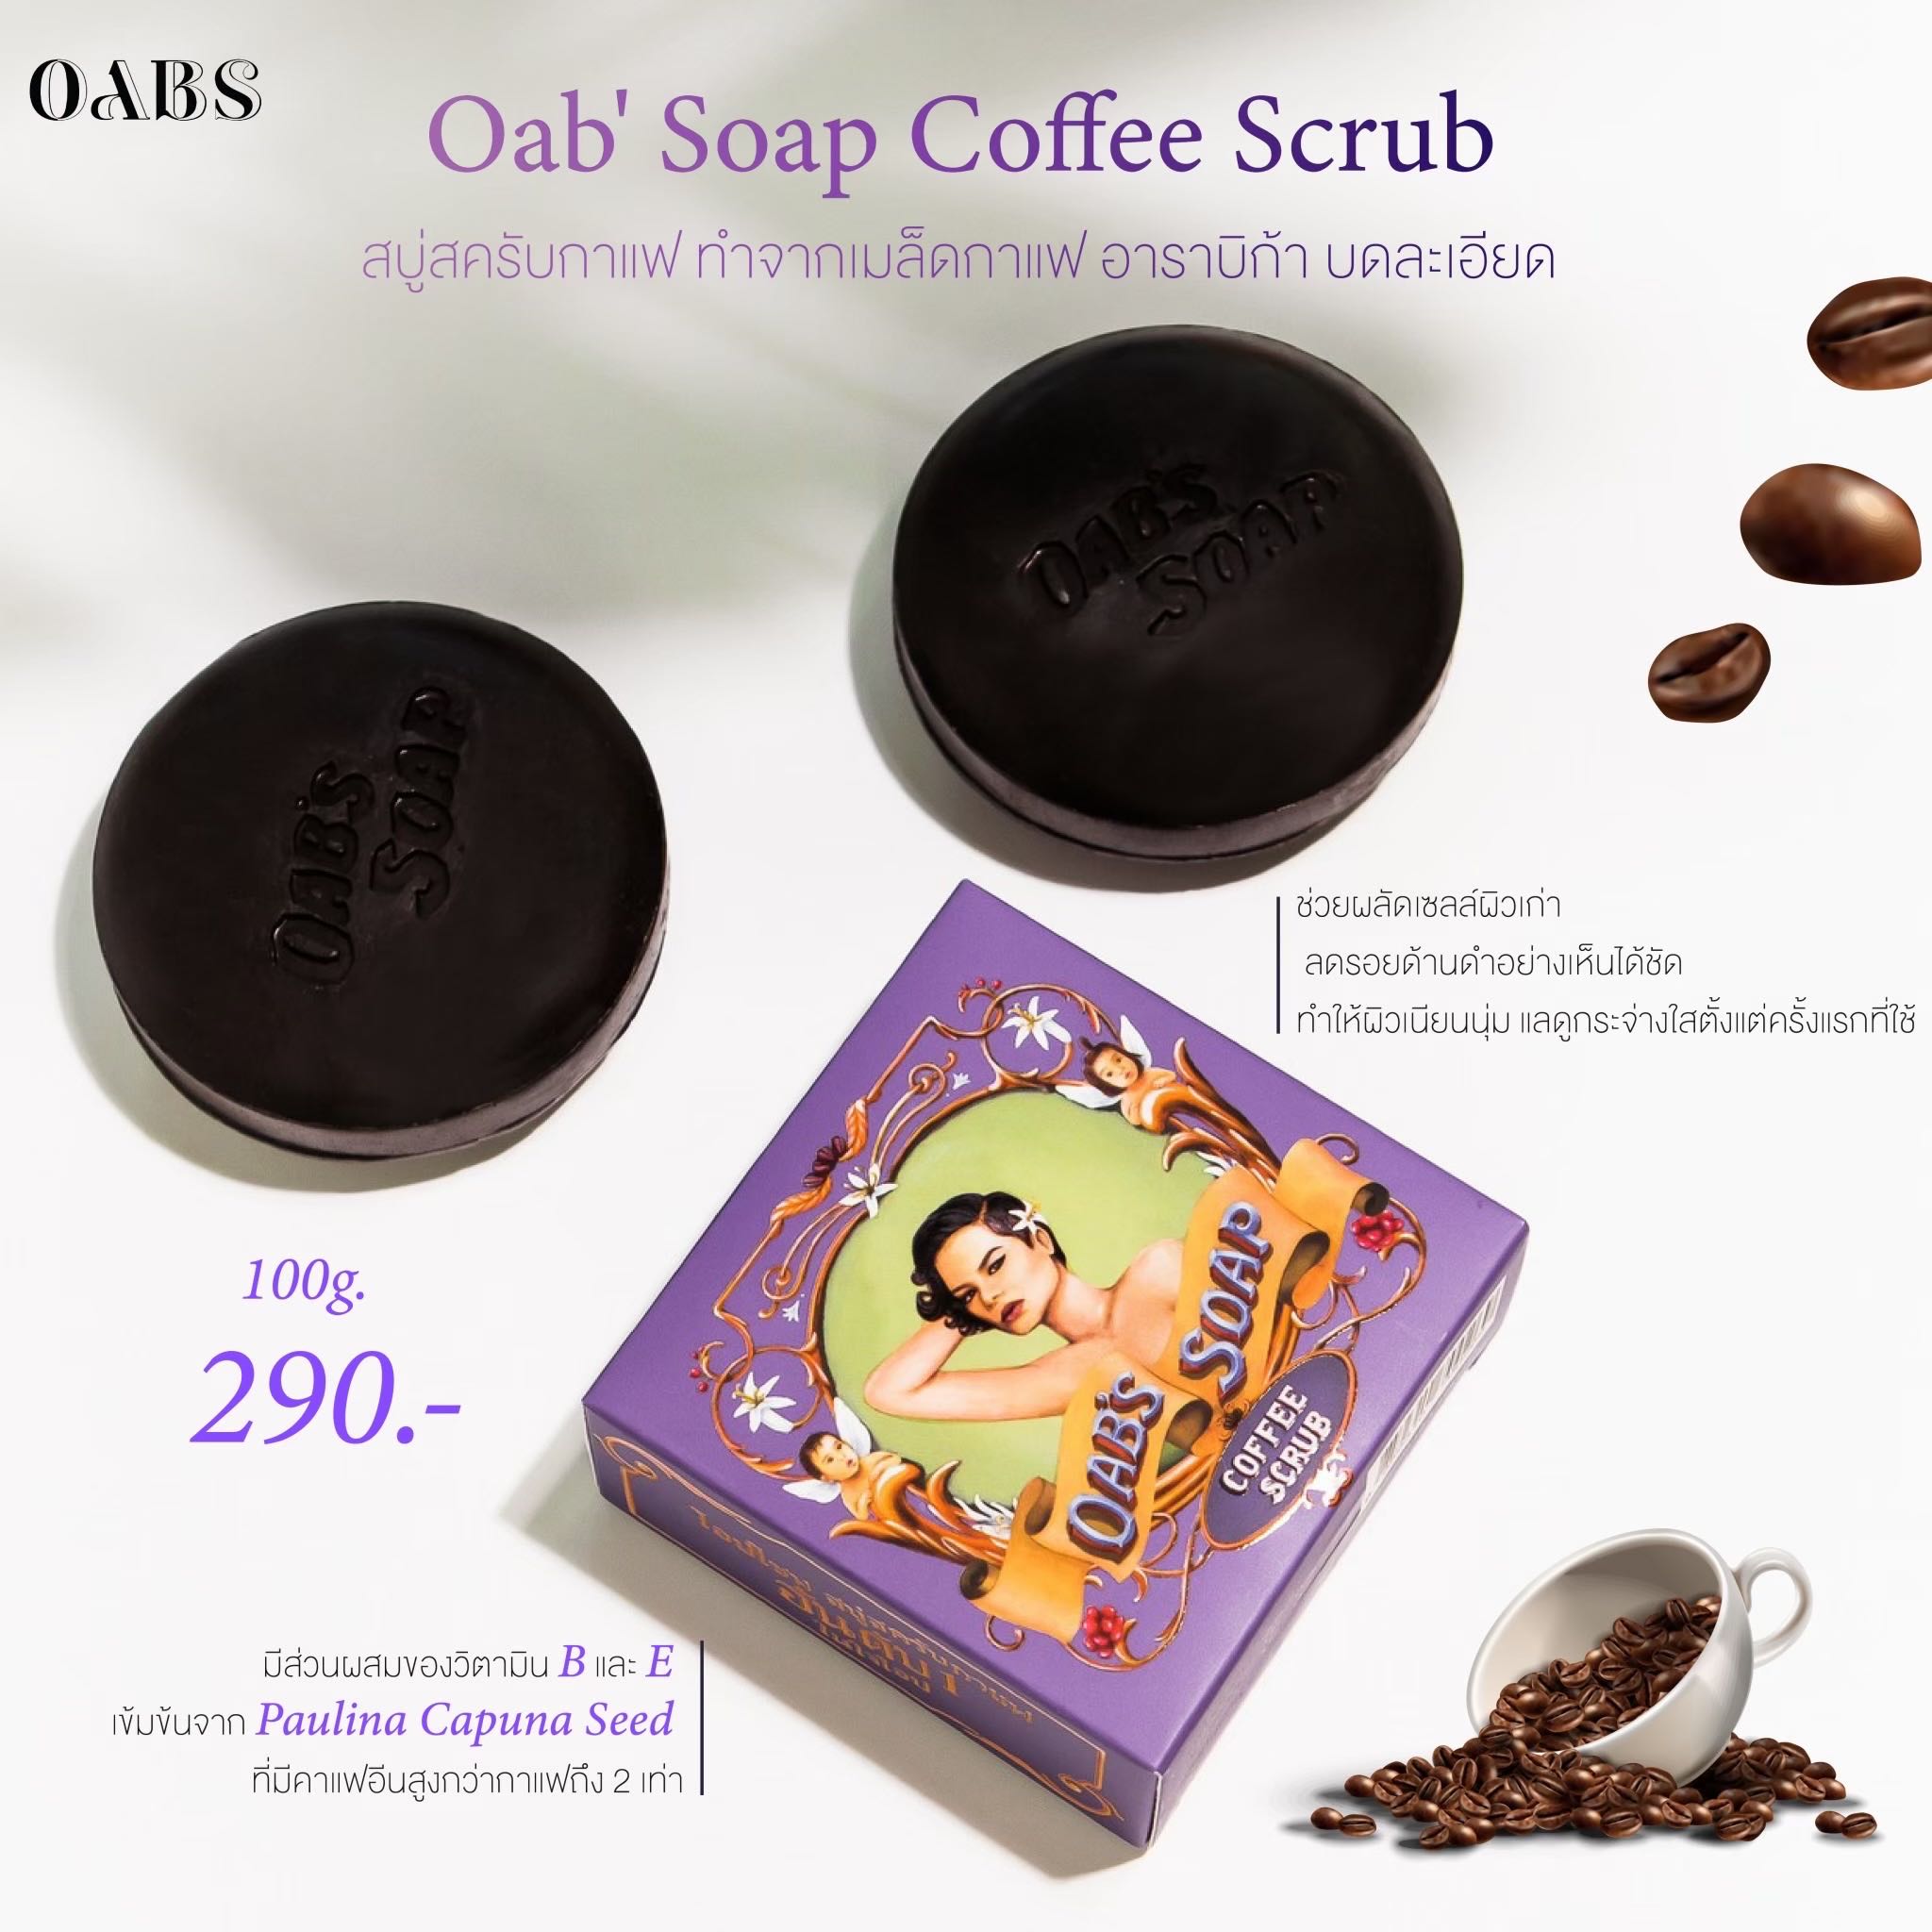  Oab' Soap Coffee Scrub 100g